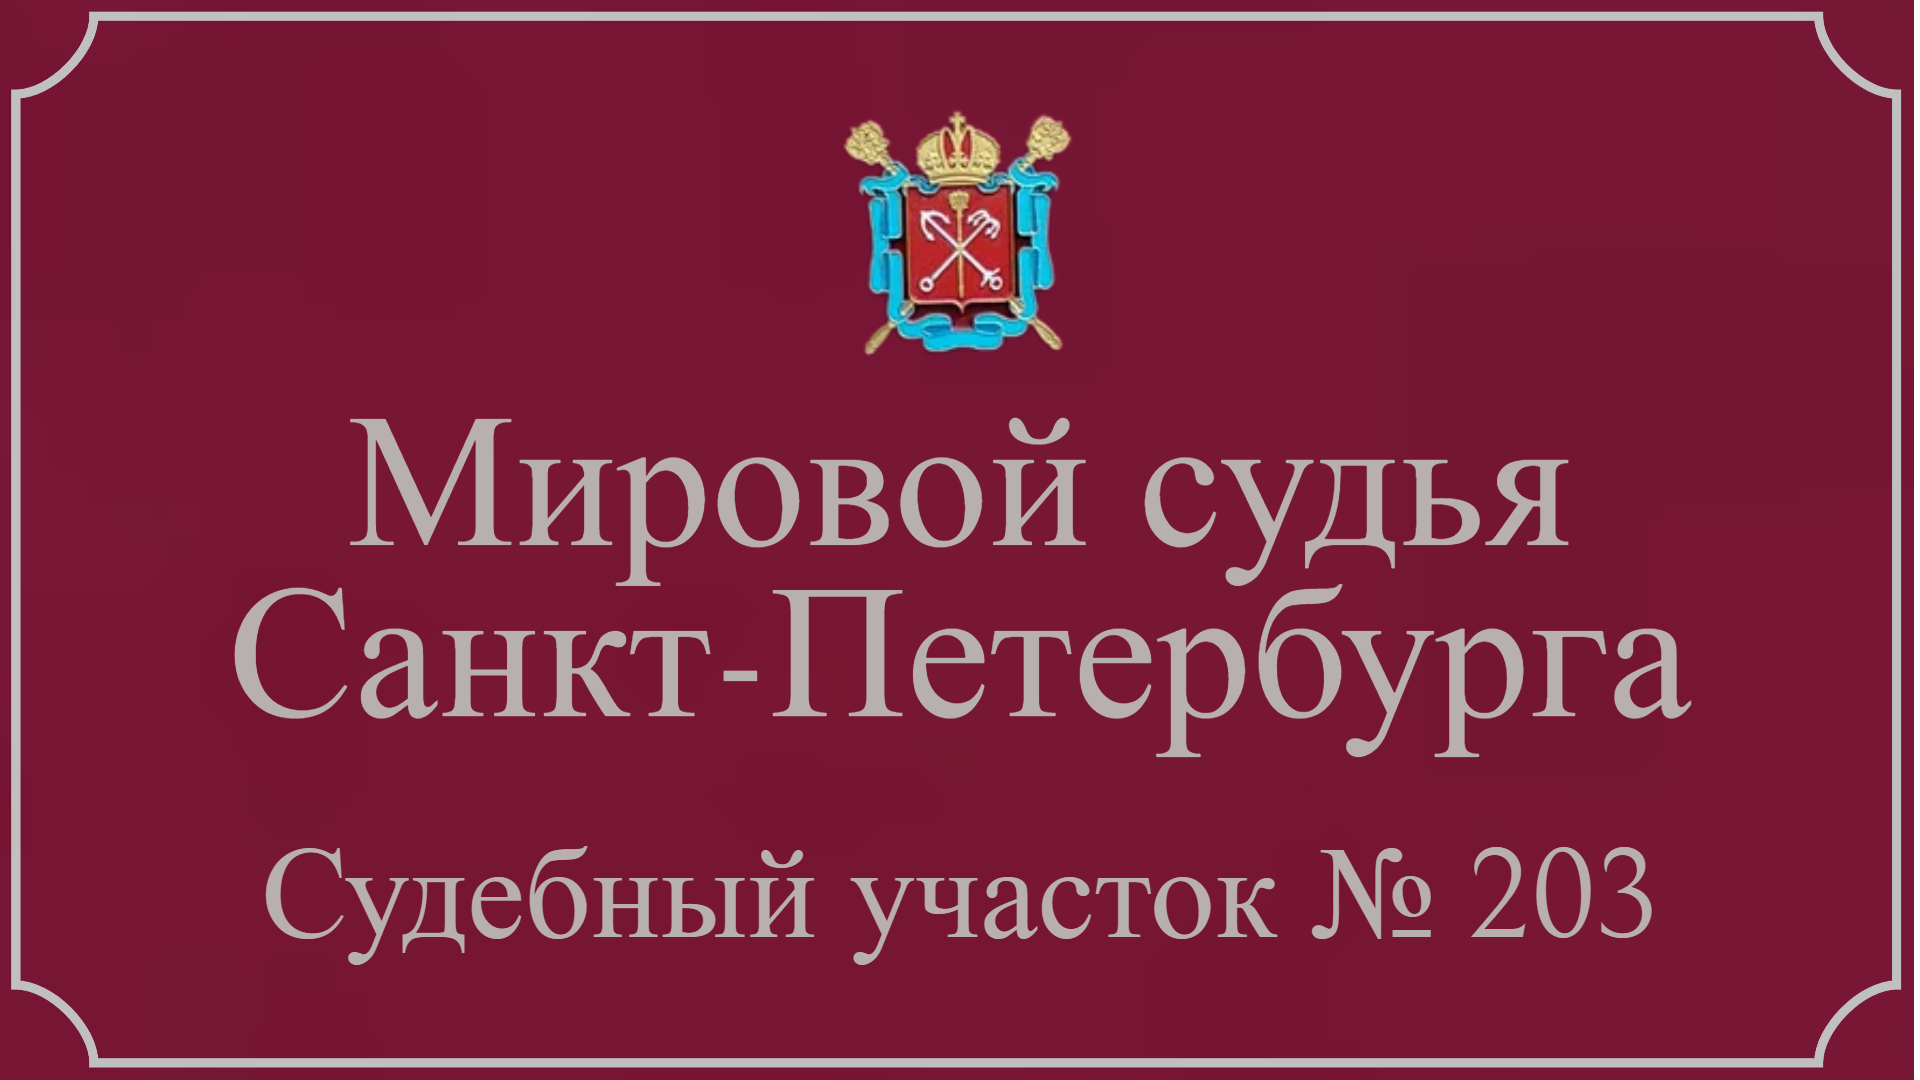 Информация по 203 судебному участку в Санкт-Петербурге.